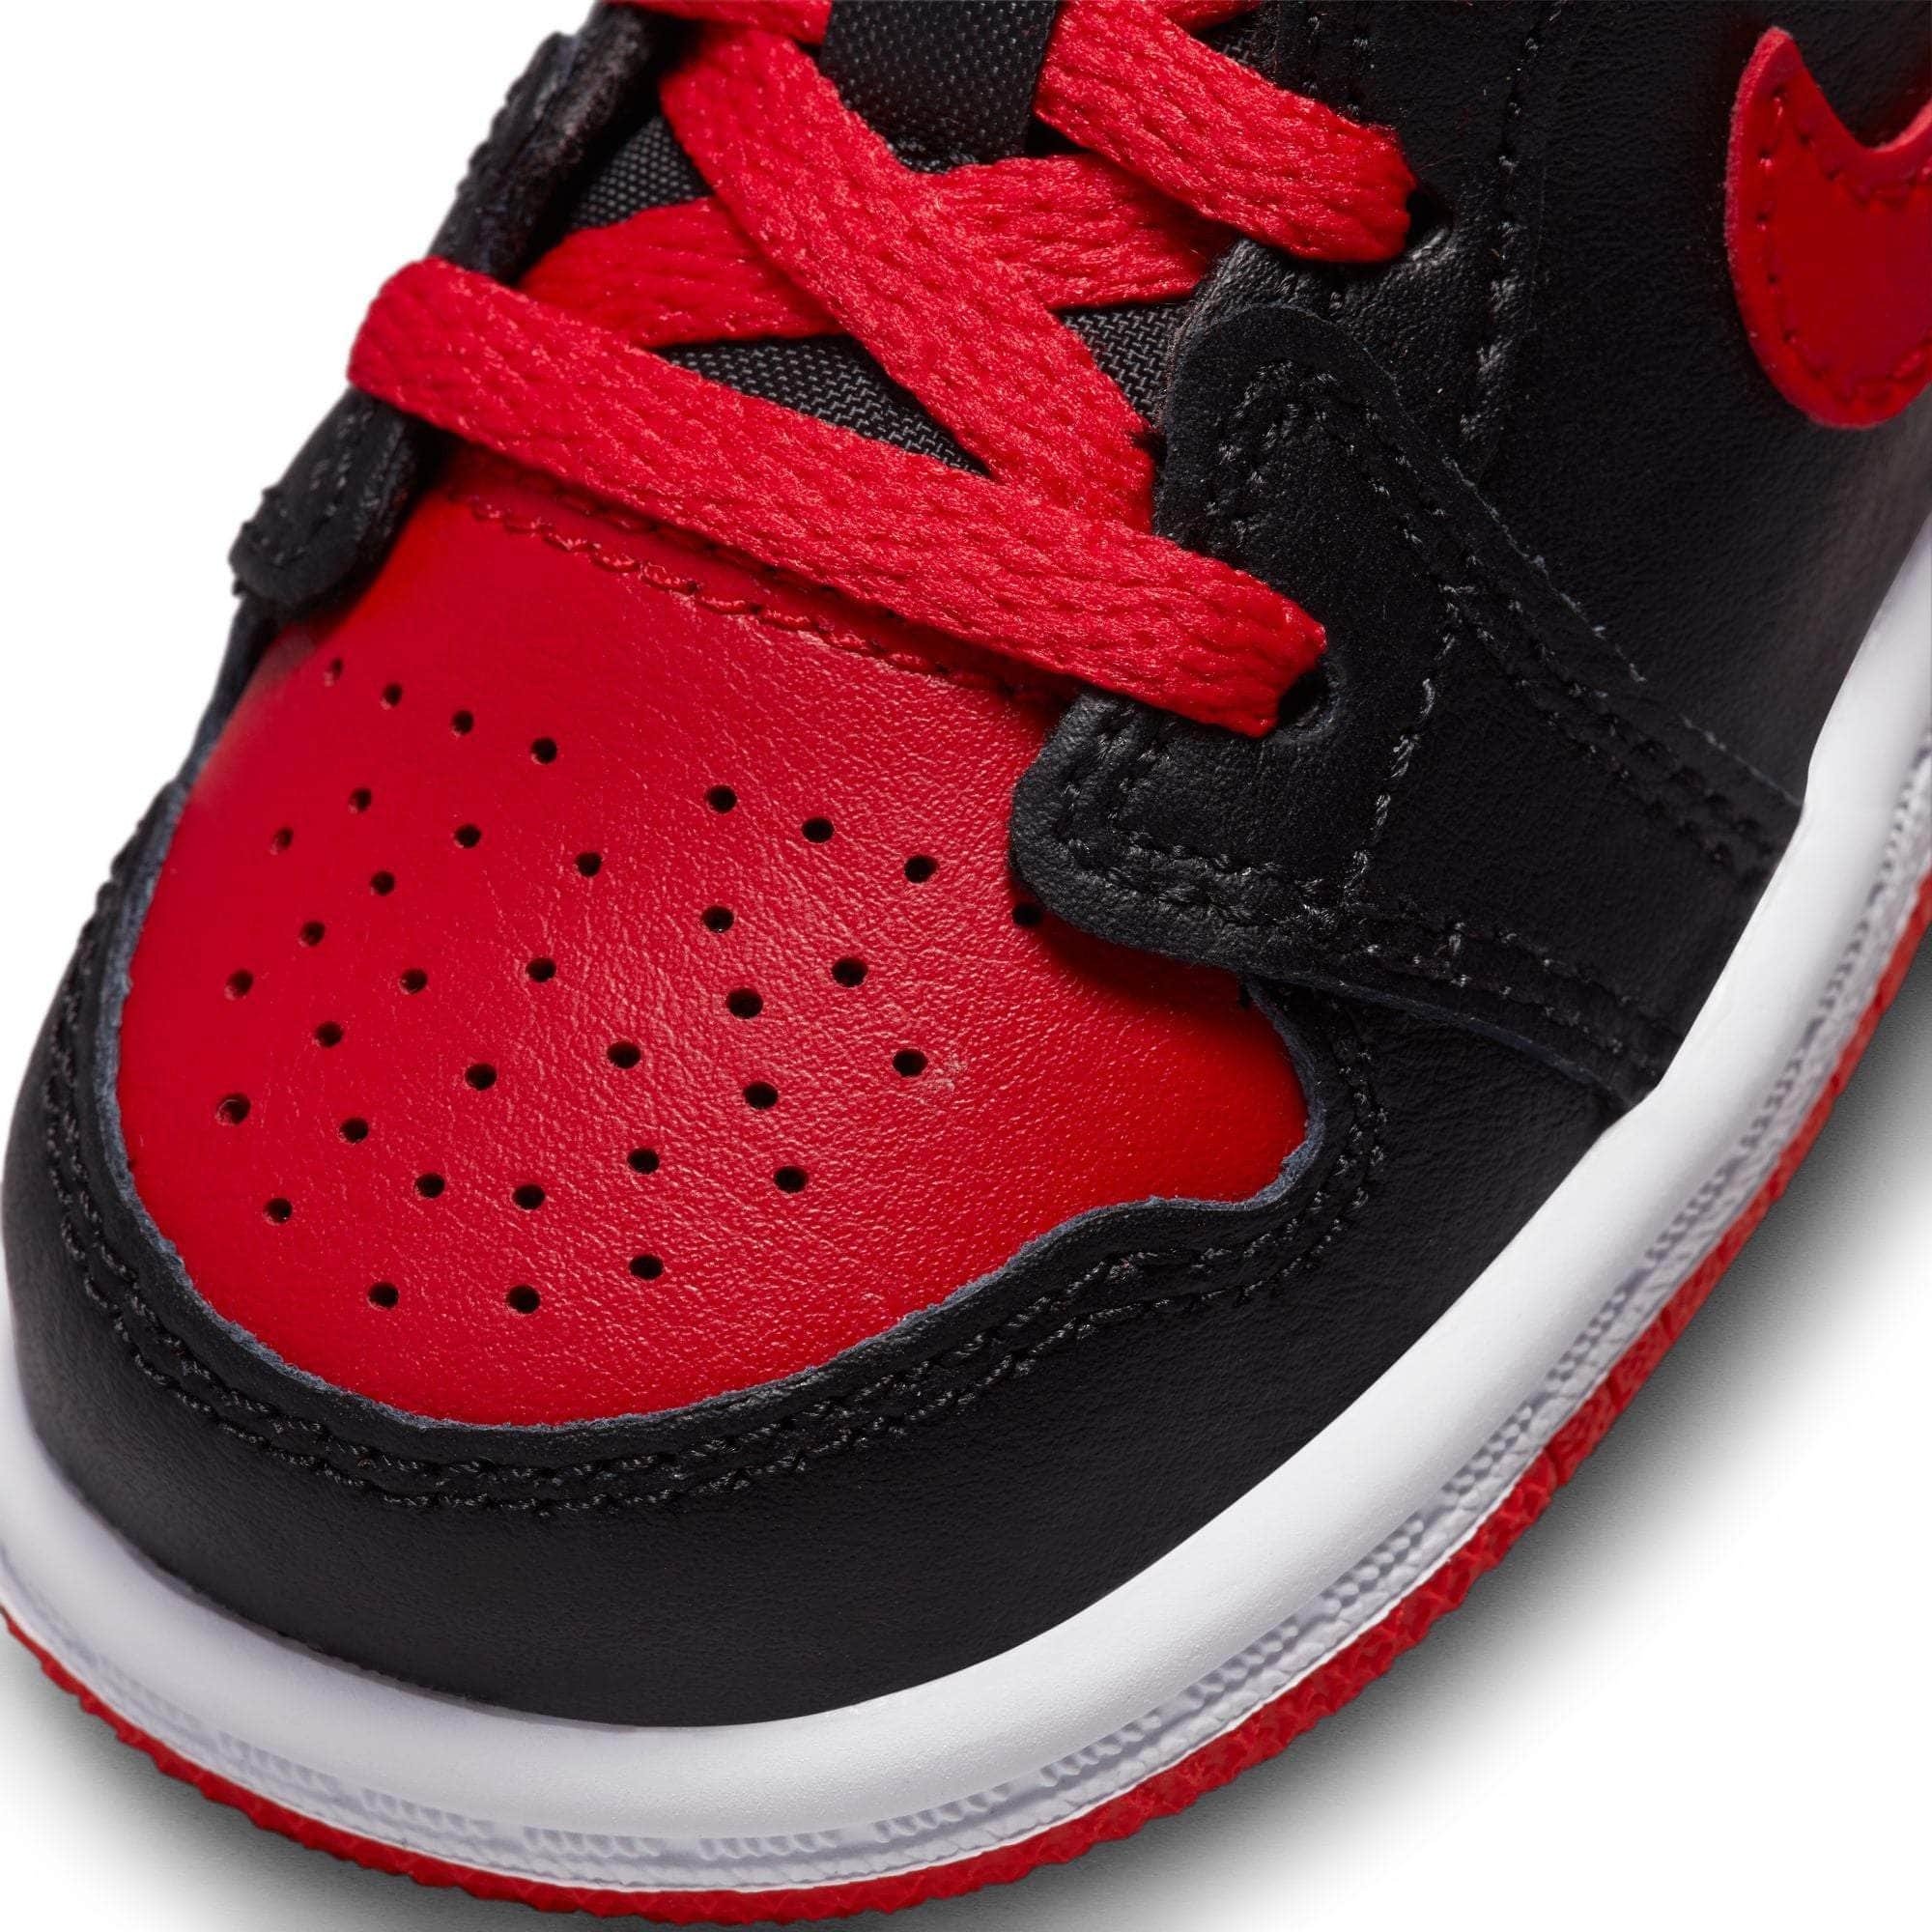 Air Jordan FOOTWEAR Air Jordan 1 Mid "Alternate Bred" - Toddler's